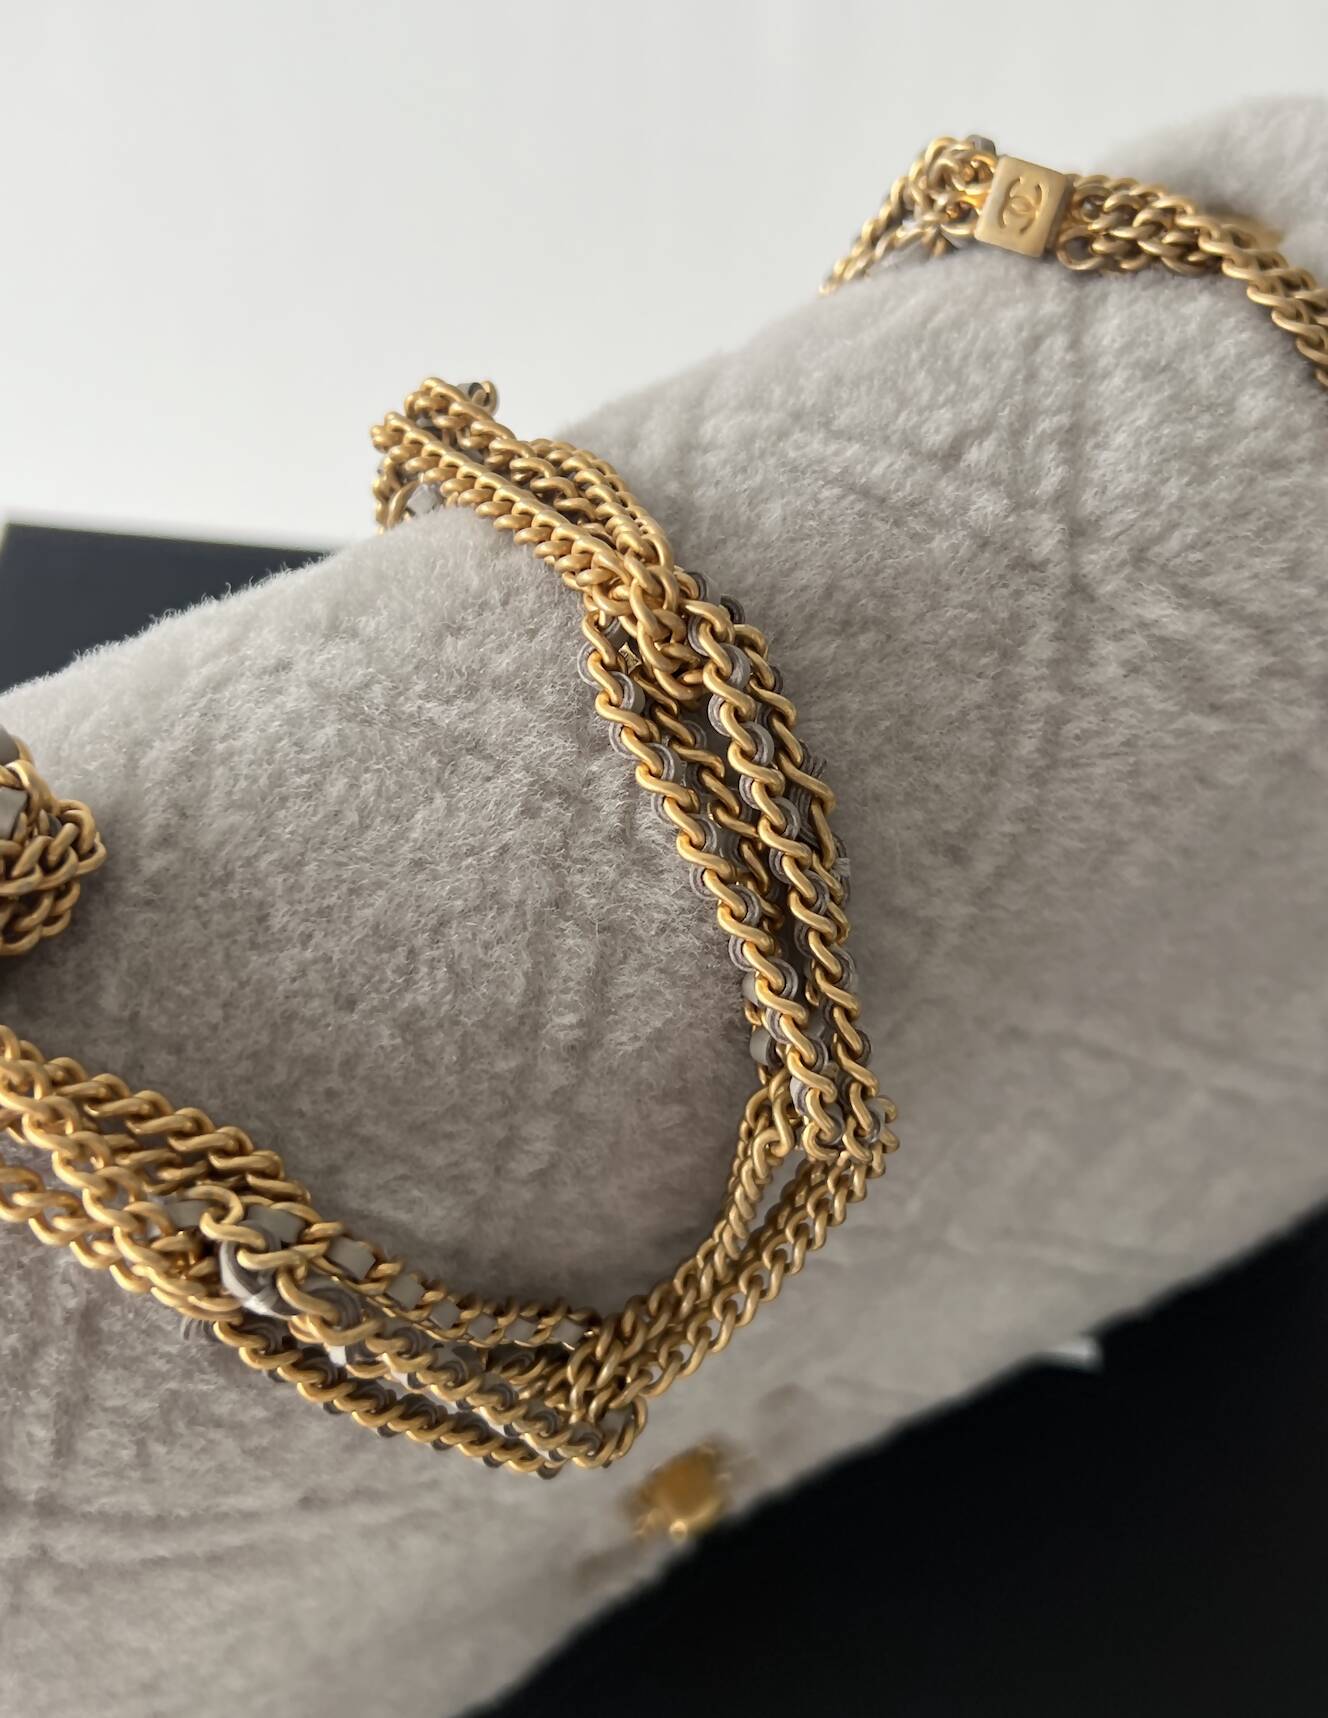 Chanel’s 2022 Métiers d’Art collection - Flap Bag